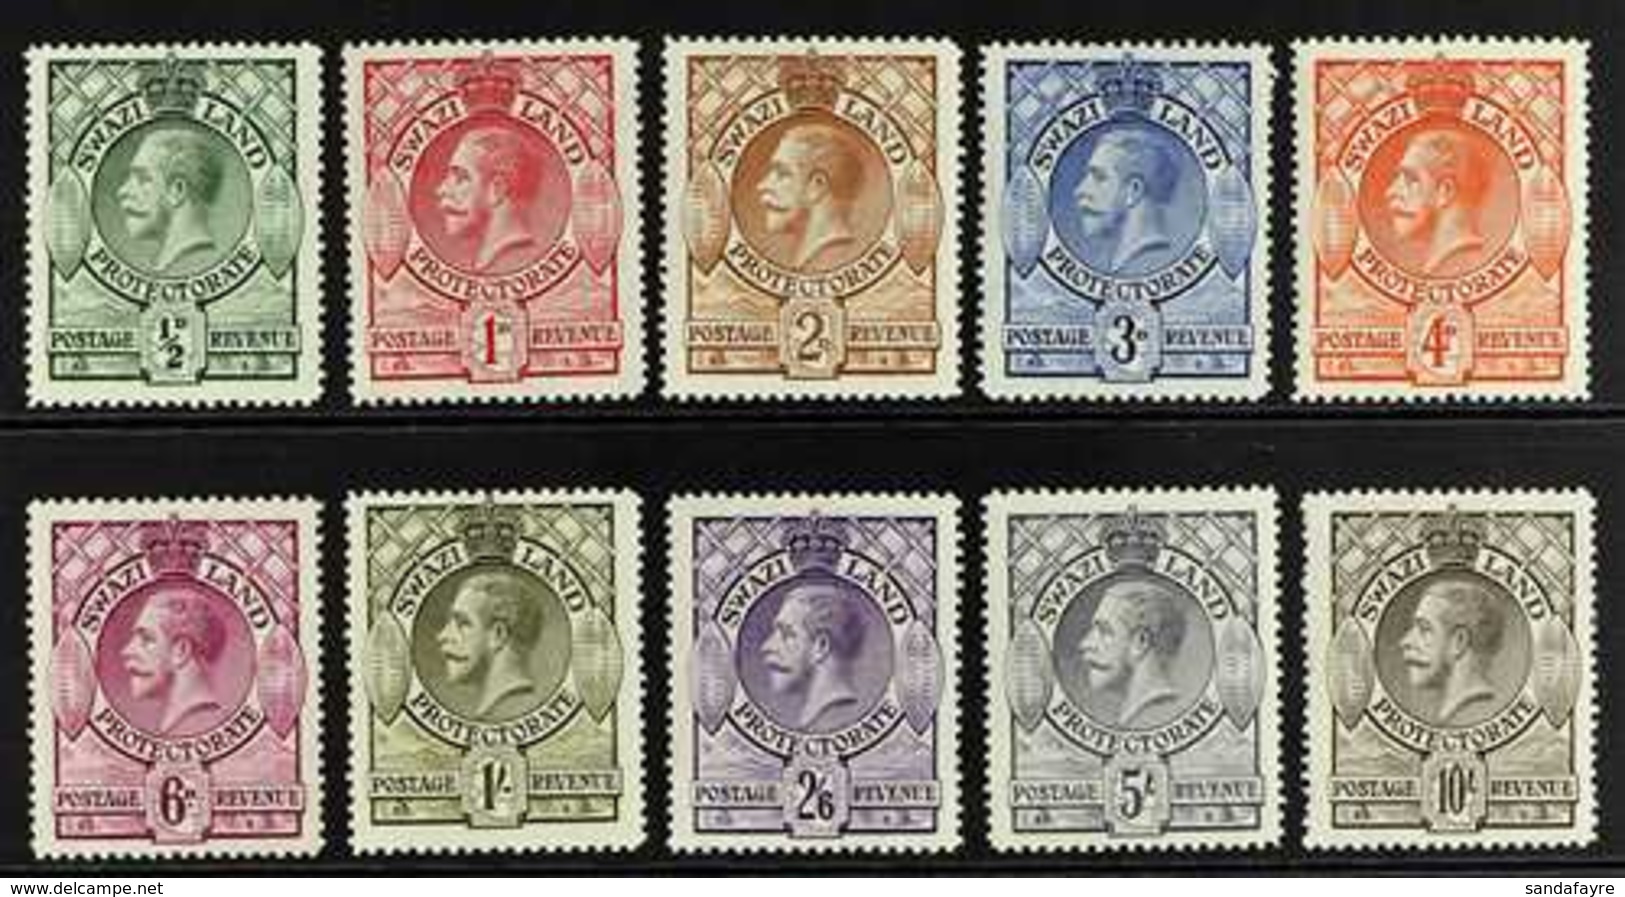 1933 Complete King George V Definitive Set, SG 11/20, Superb Never Hinged Mint. (10 Stamps) For More Images, Please Visi - Swaziland (...-1967)